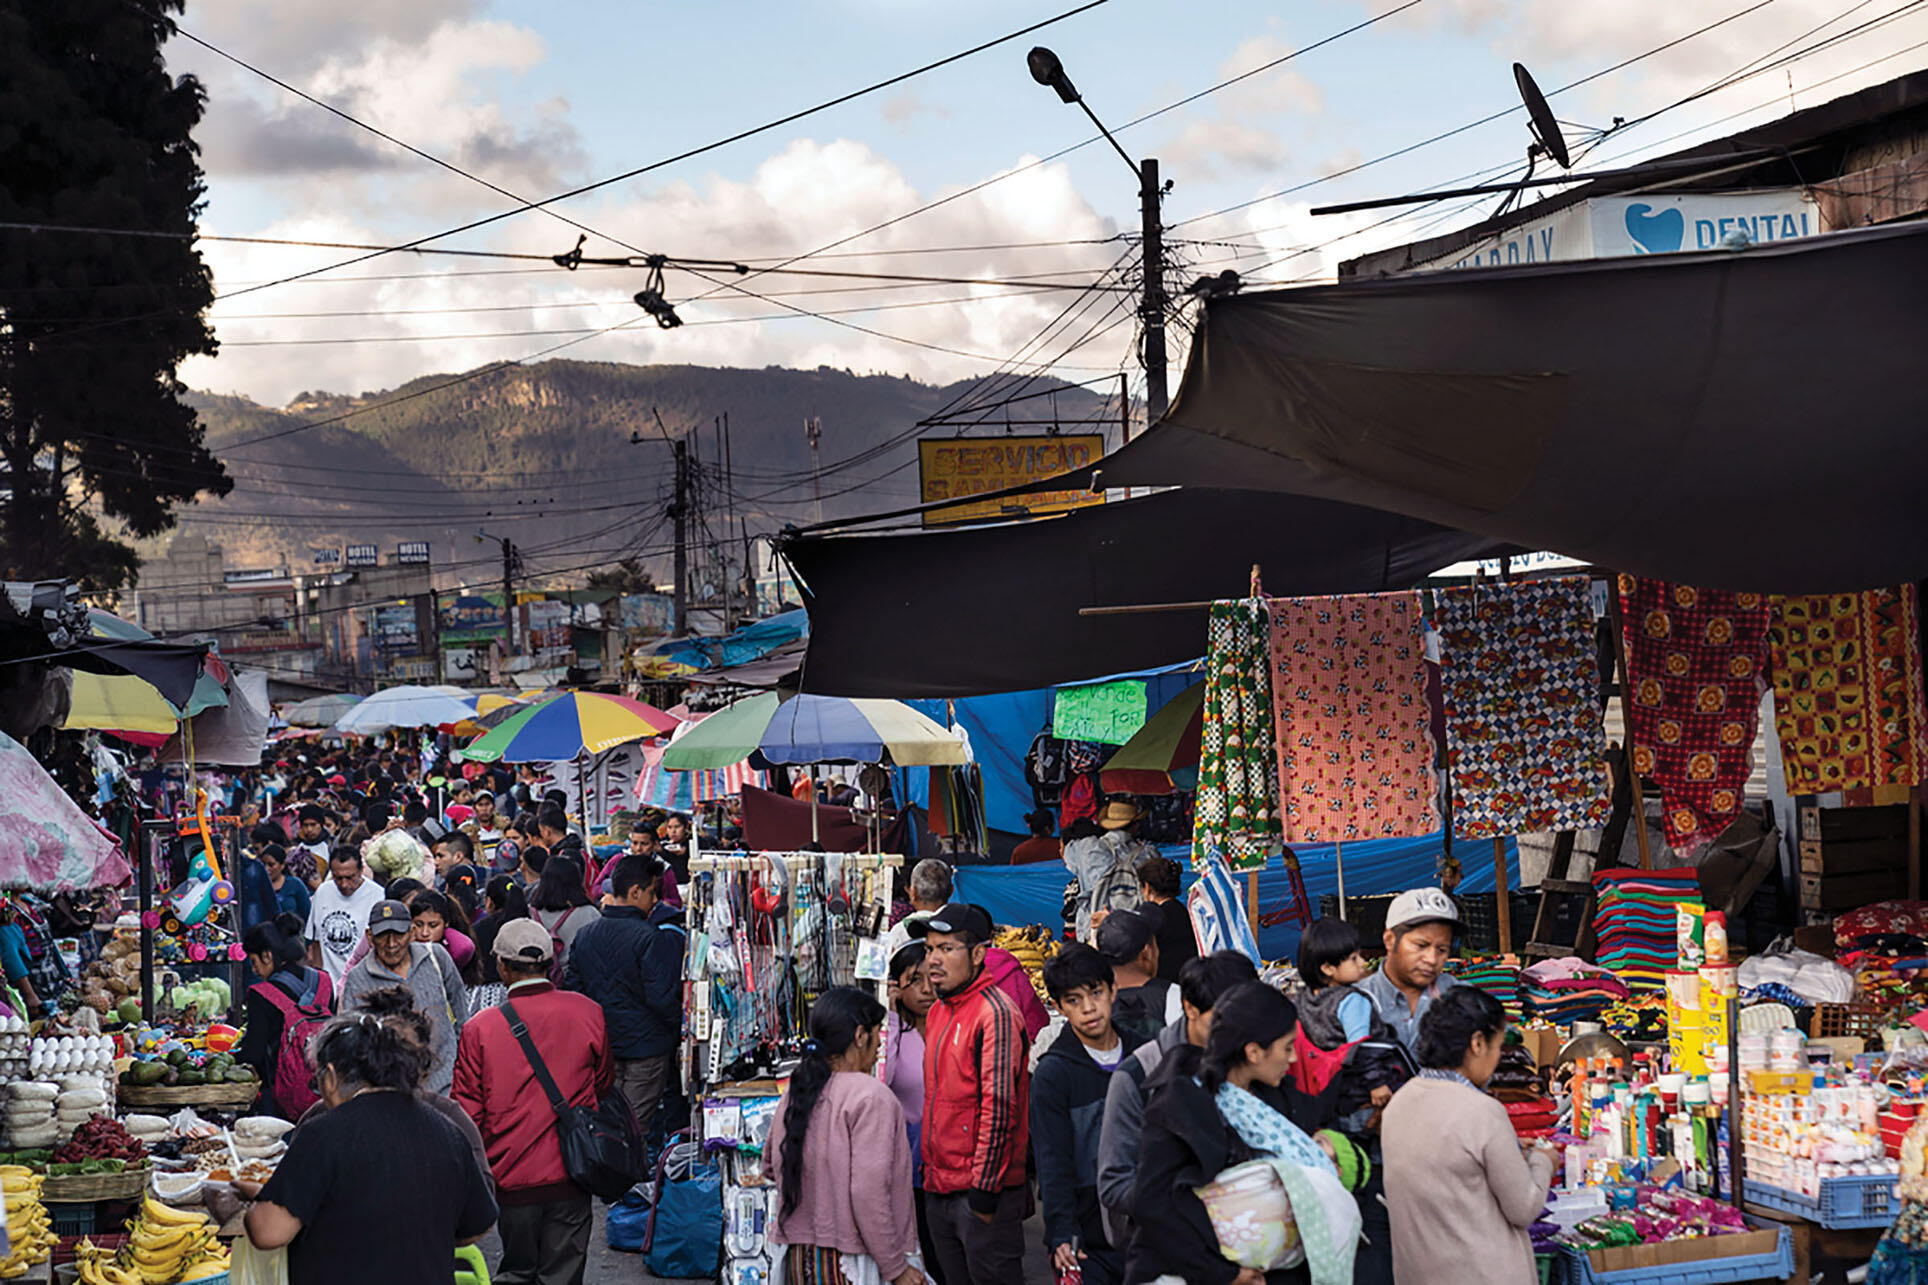 Los vendedores venden productos en un concurrido mercado al aire libre en Quetzaltenango, Guatemala. (Foto cortesía de la Oficina Regional de Centroamérica de los CDC, Guatemala.)